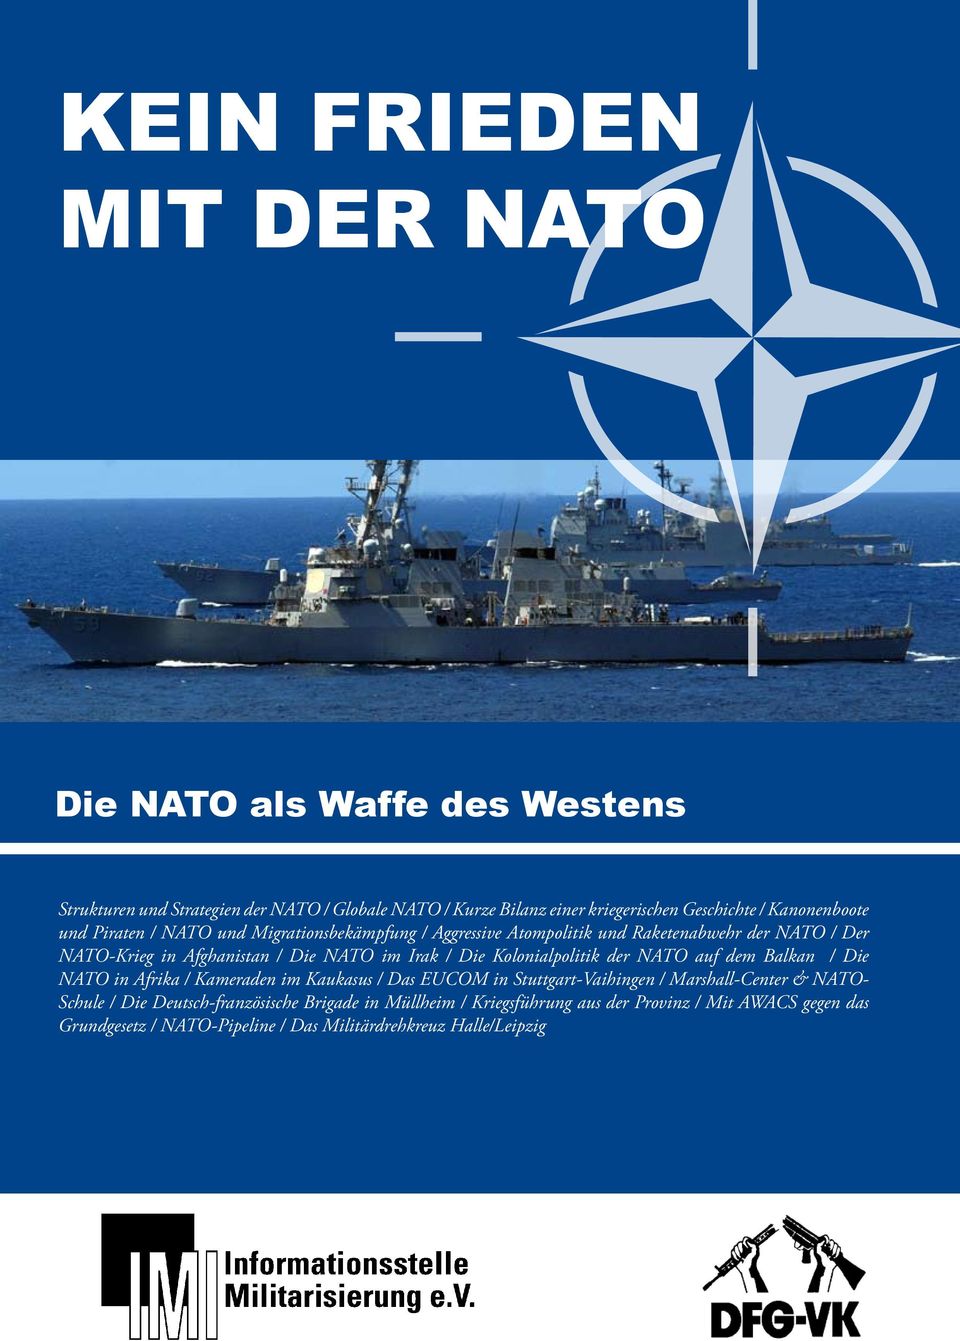 / Die Kolonialpolitik der NATO auf dem Balkan / Die NATO in Afrika / Kameraden im Kaukasus / Das EUCOM in Stuttgart-Vaihingen / Marshall-Center & NATO- Schule